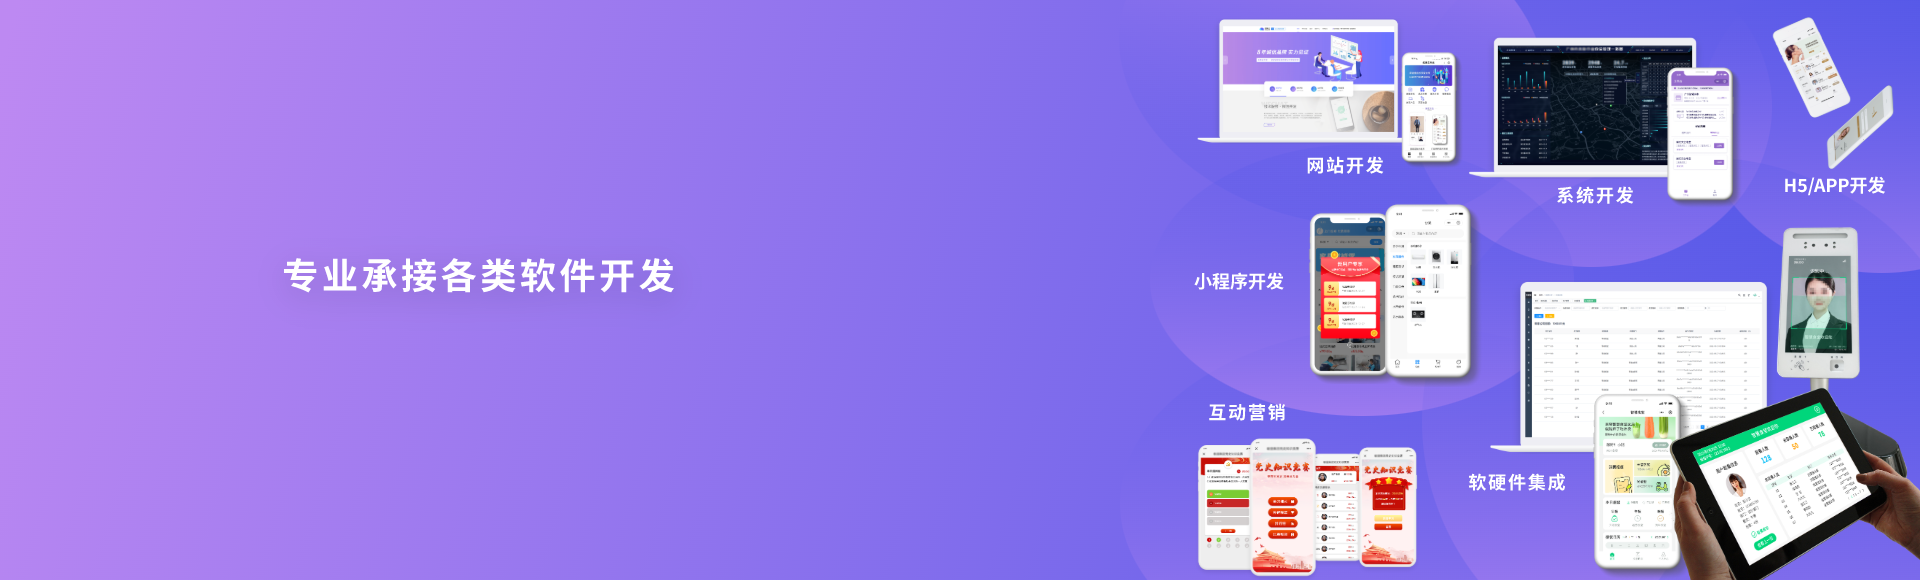 网站建设解决方案——广州个性化网站定制开发-轮播图